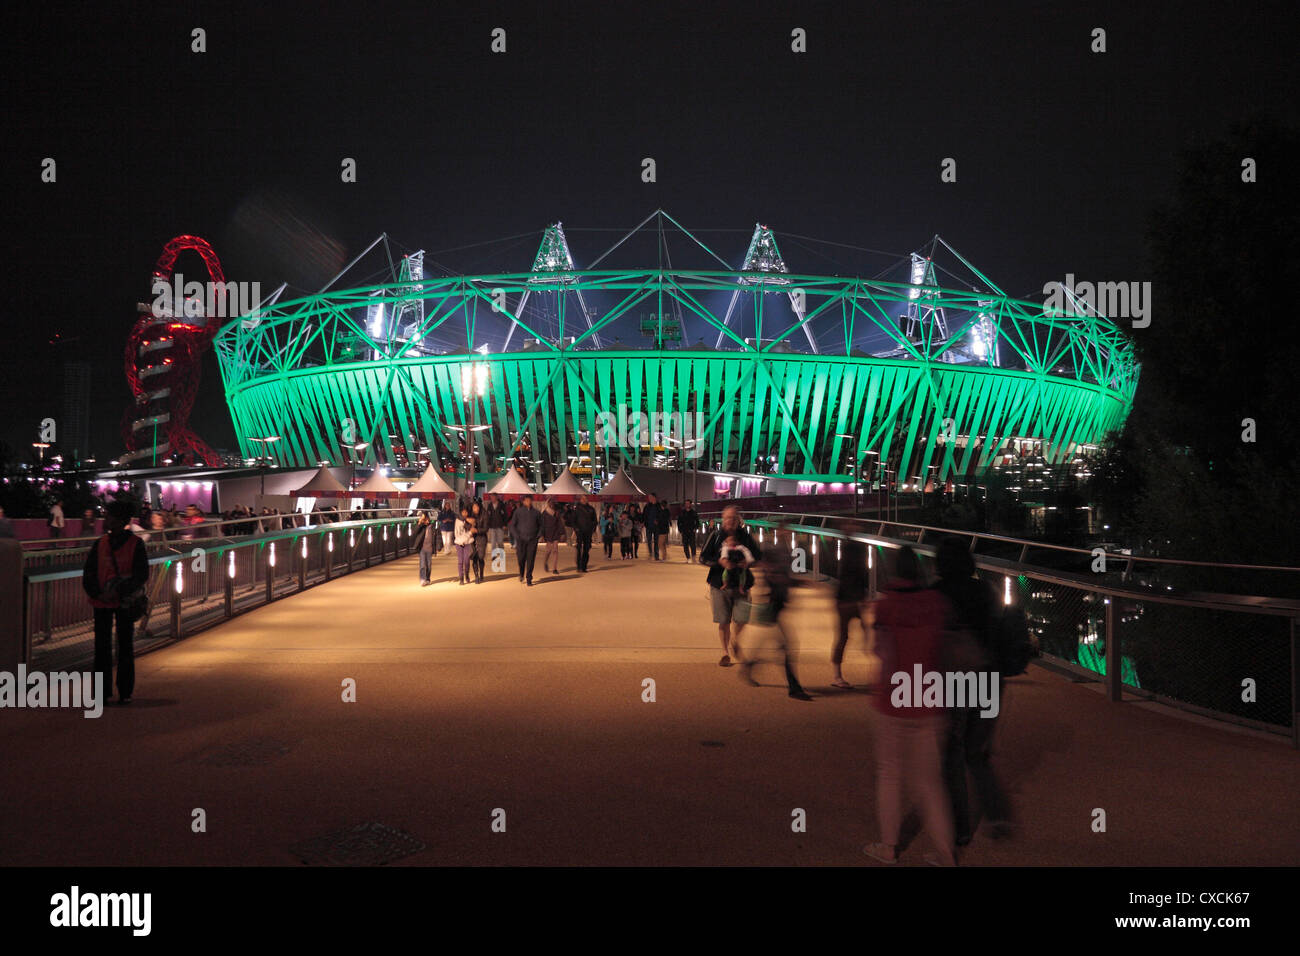 Londres 2012 le stade olympique de Stratford, l'Est de Londres, au cours de l'Jeux Paraolympic en août 2012. Banque D'Images